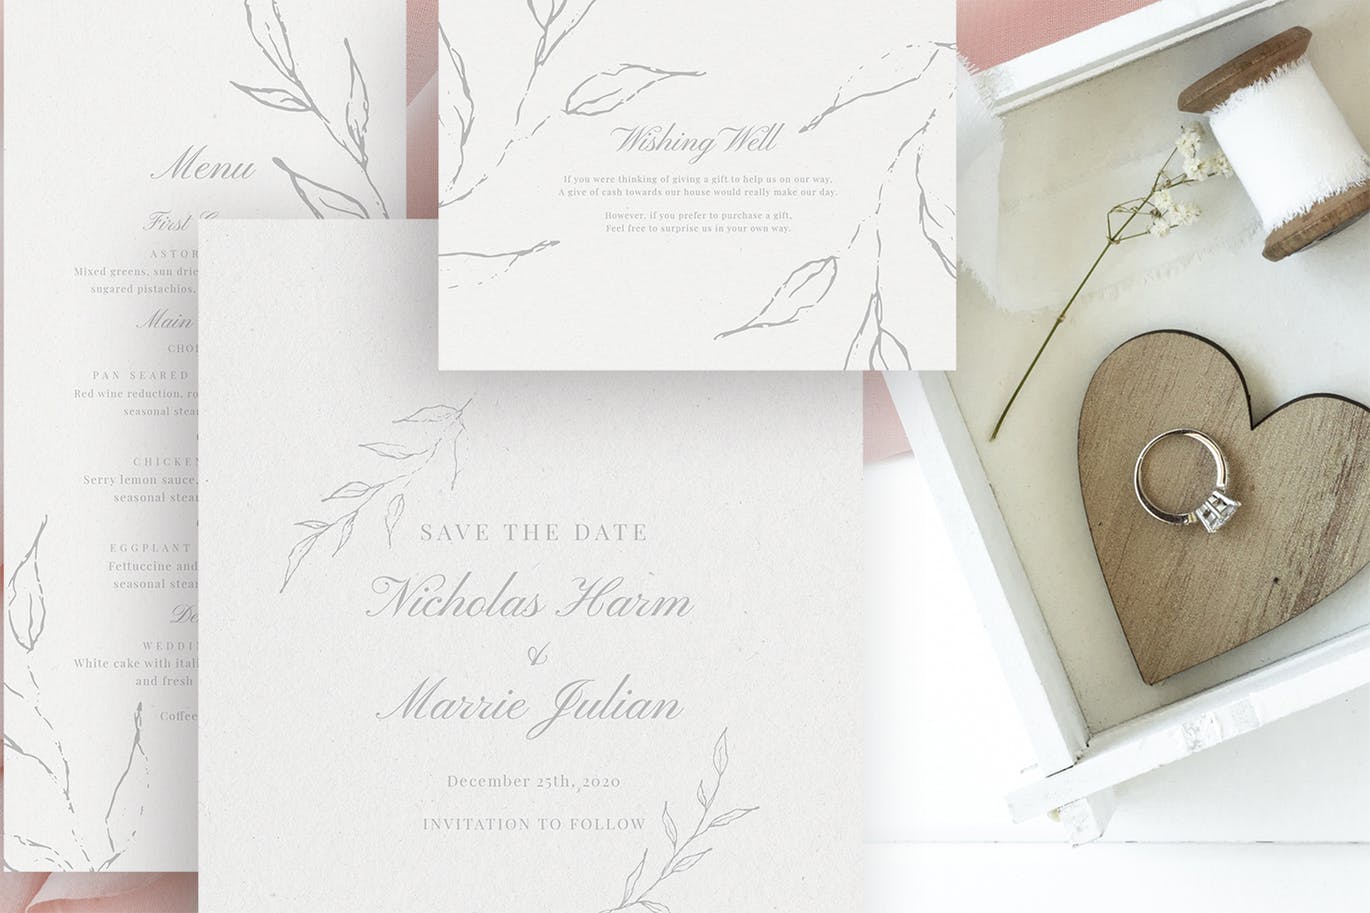 优雅手绘花卉图案婚礼主题设计素材包 Elegant Floral Wedding Suite插图(2)